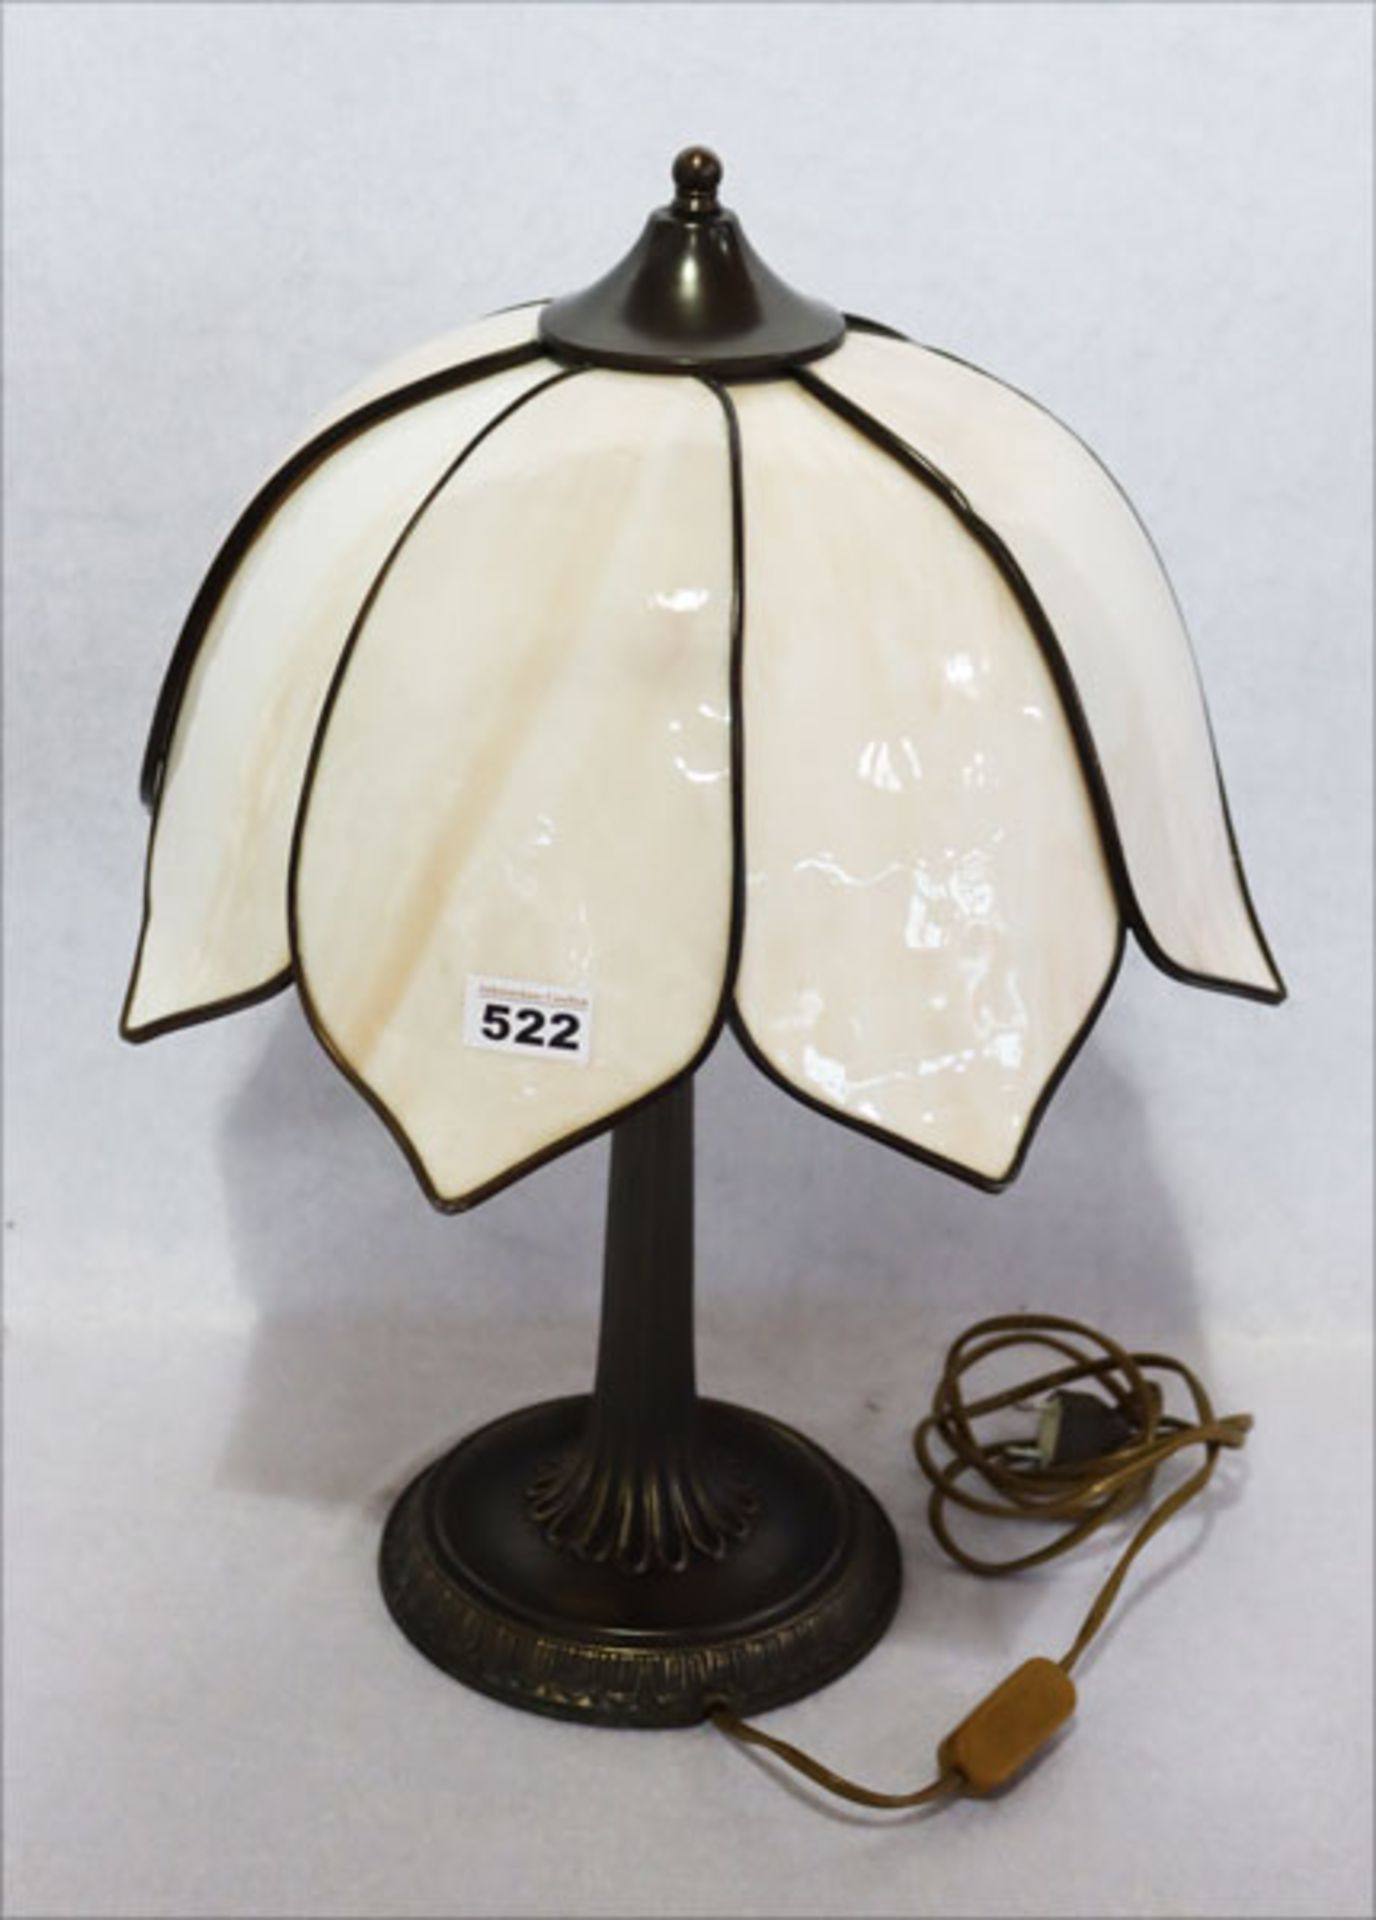 Metall Tischlampe mit verglastem Lampenschirm in Blütenform, H 53 cm, D 40 cm, Funktion nicht